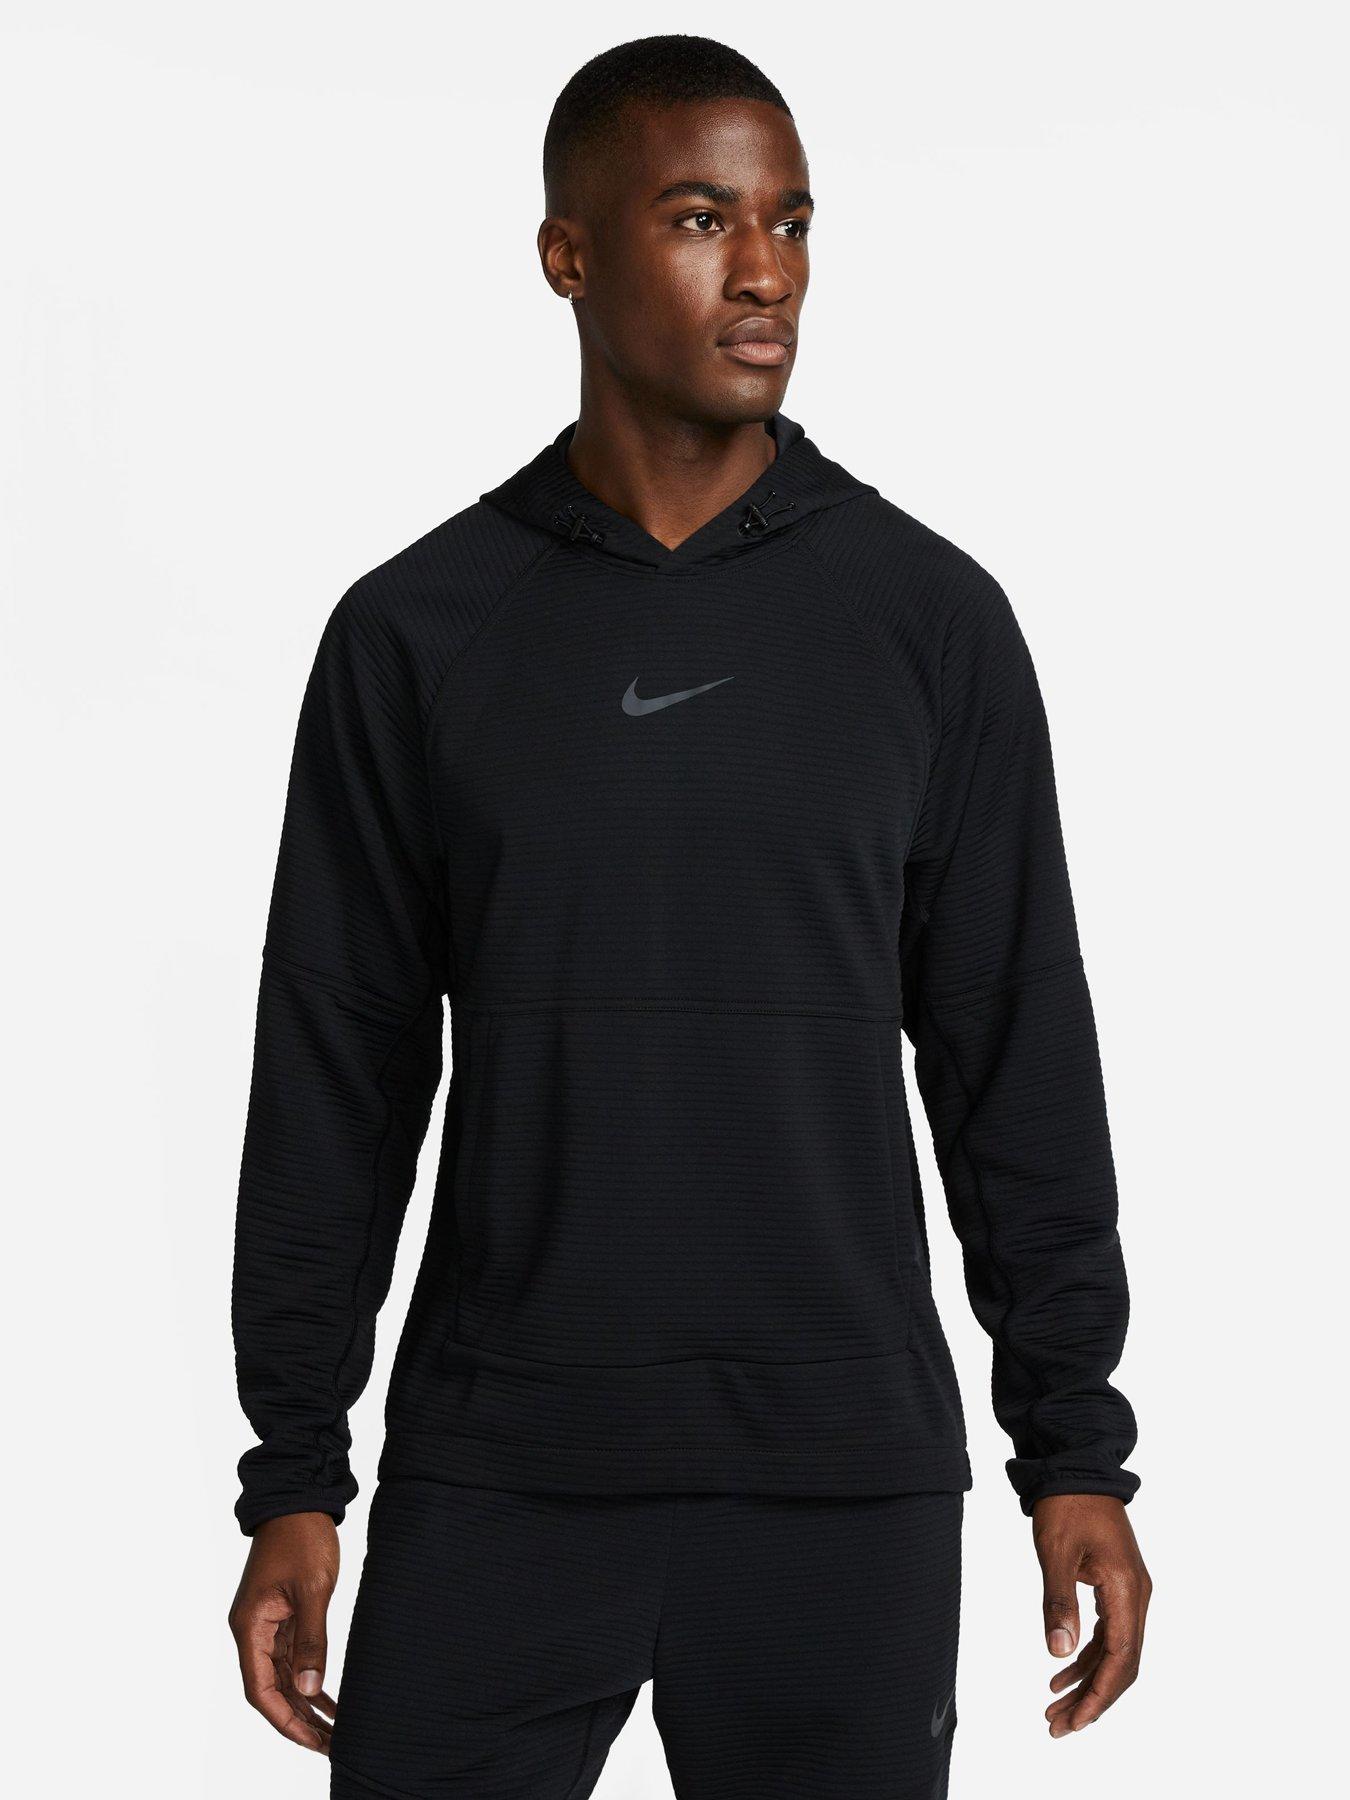 Hoodies & sweatshirts, Sportswear, Men, Nike